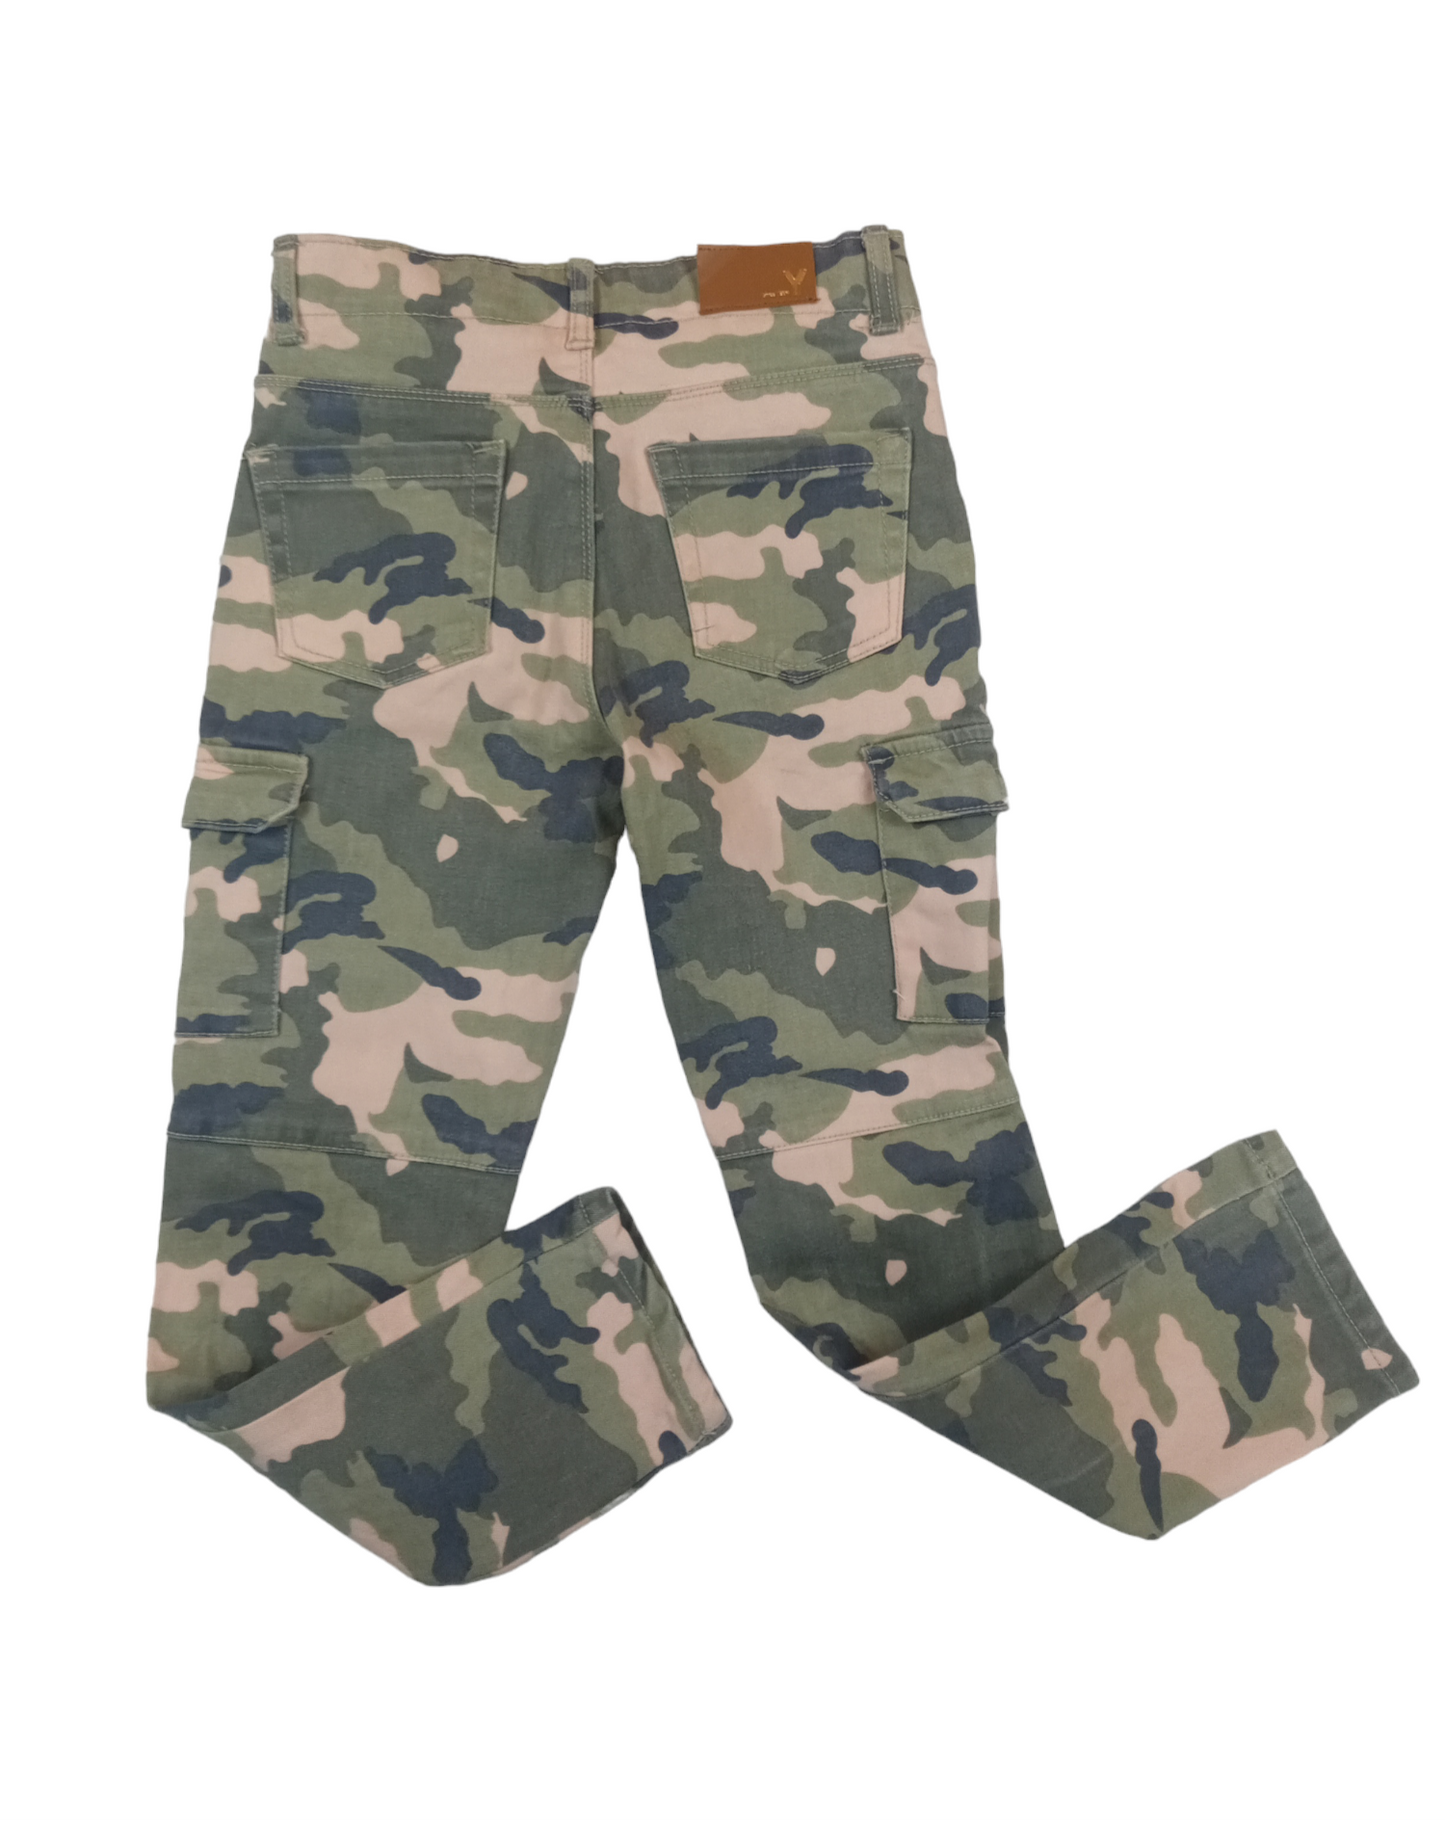 Pantalón militar/ talla 8